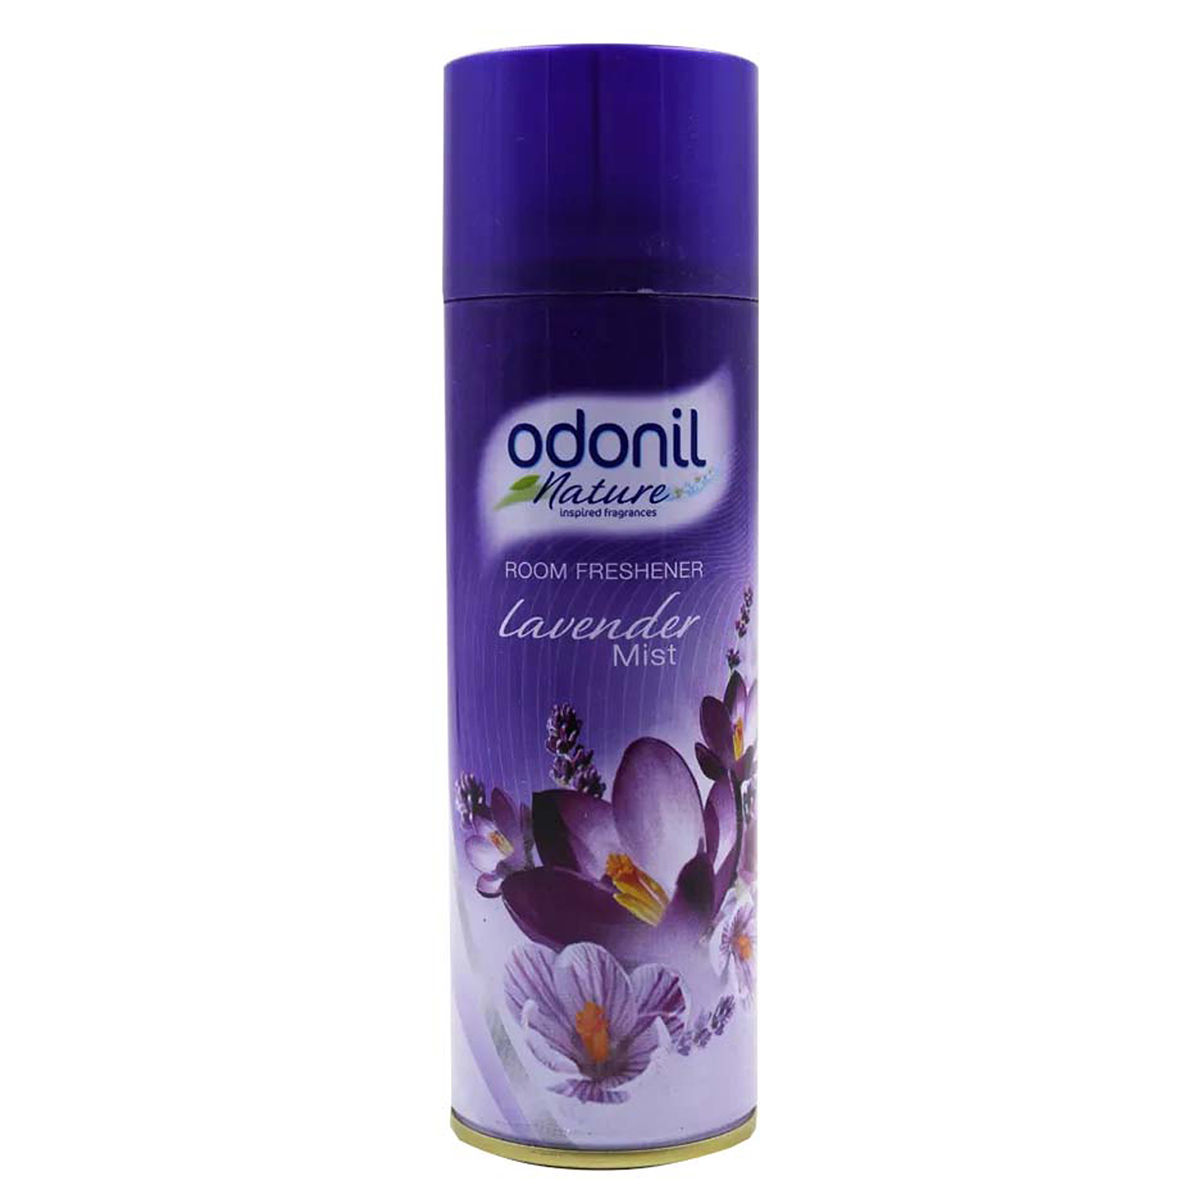 Buy Odonil Lavender Mist Room Freshener, 140 gm Online